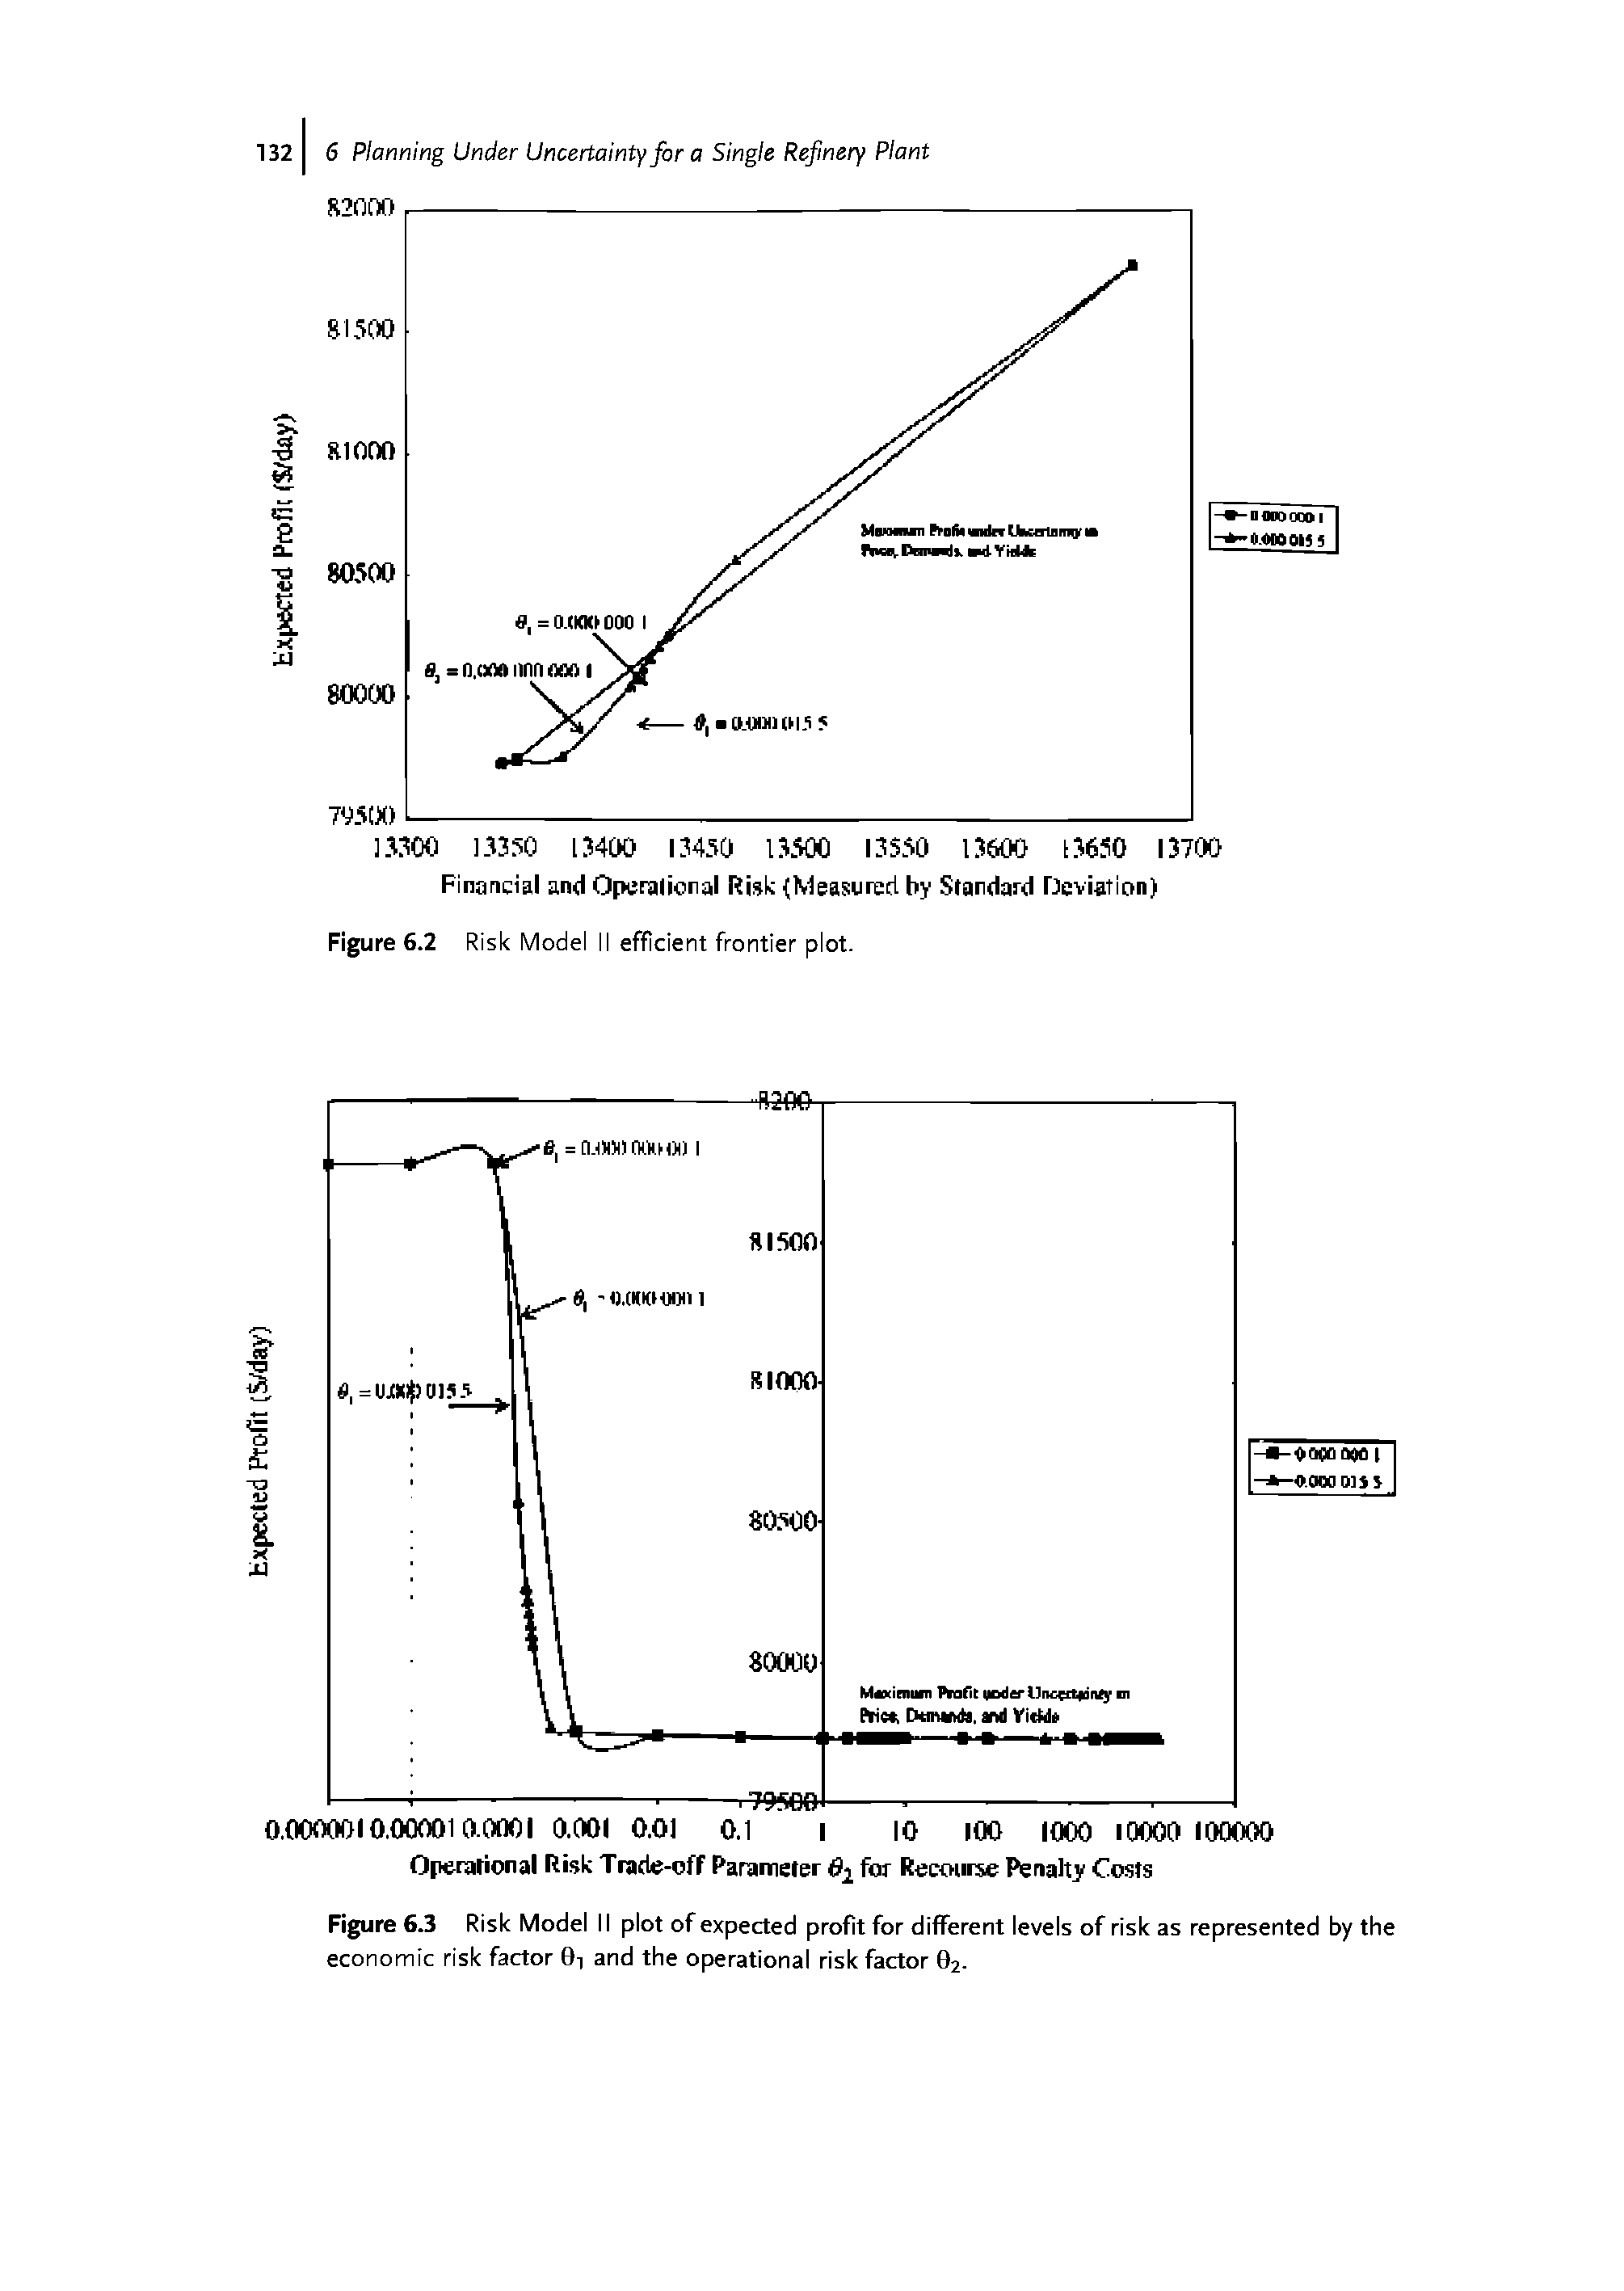 Figure 6.2 Risk Model II efficient frontier plot.